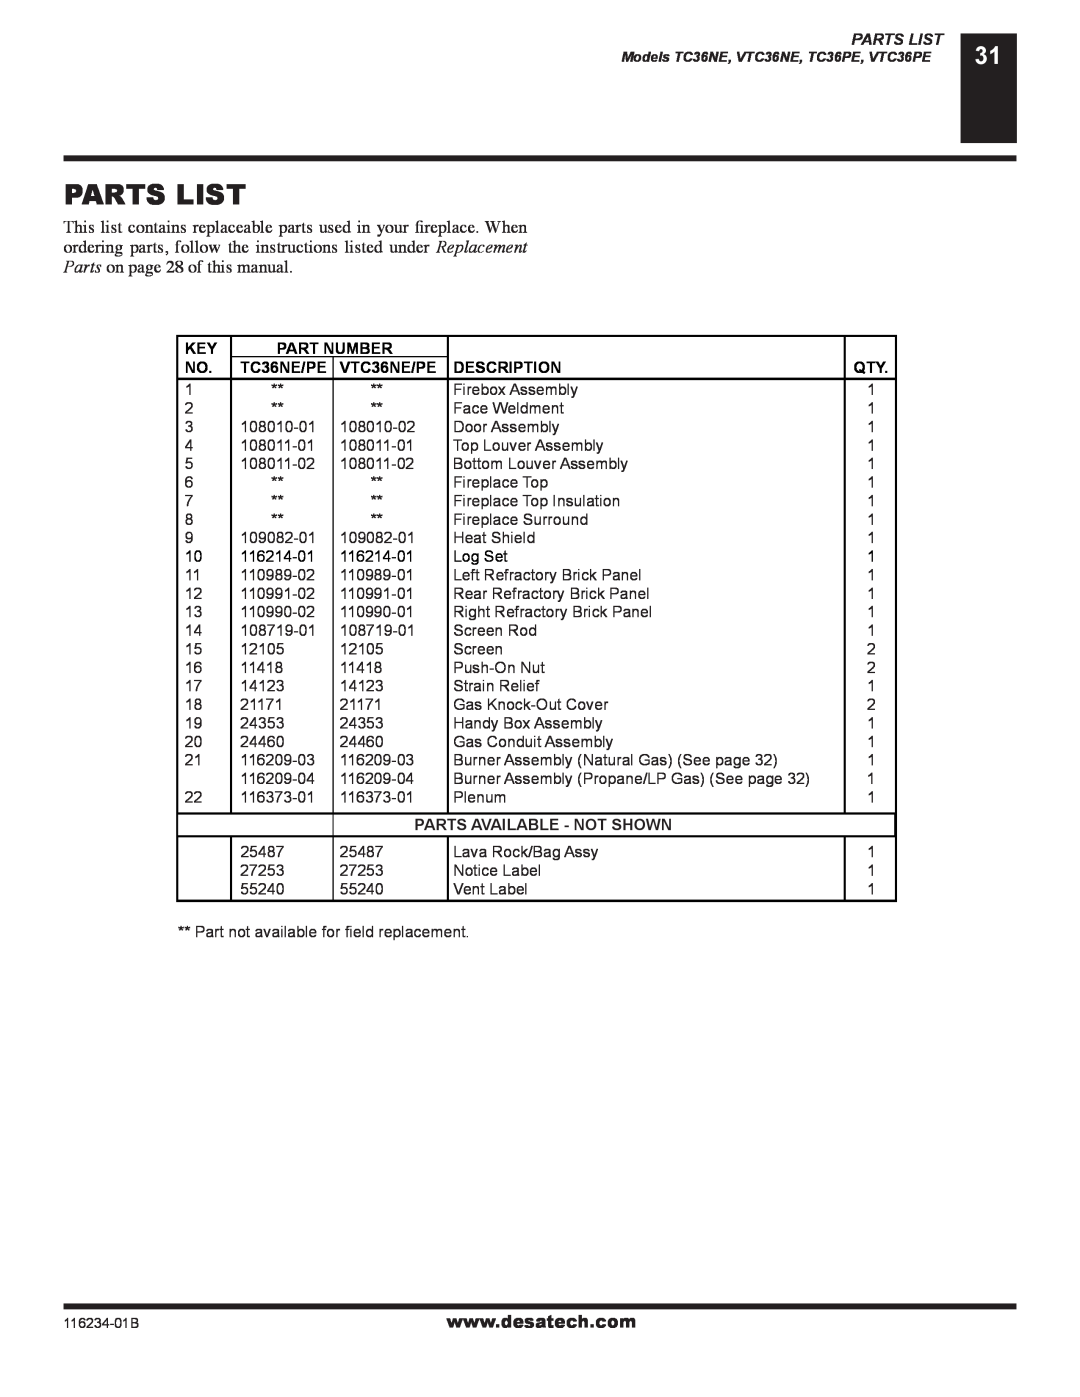 Desa (V)TC36NE, (V)TC36PE Parts List, Part Number, VTC36NE/PE, Description, Parts Available - Not Shown 